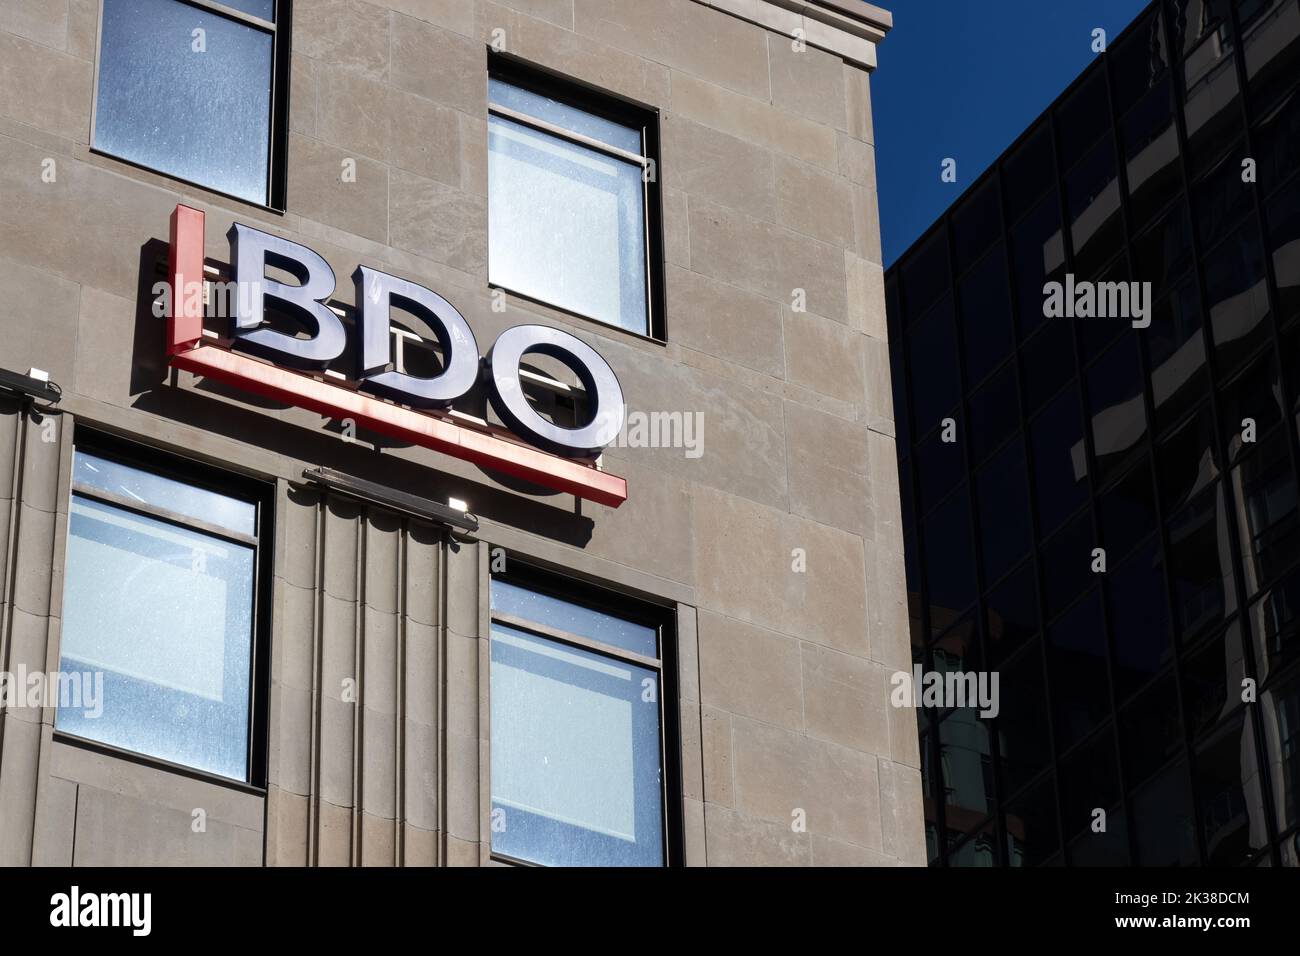 Un panneau BDO (Binder Dijker Otte) lumineux est visible dans un édifice du centre-ville de Toronto; BDO est une grande société de comptabilité internationale. Banque D'Images